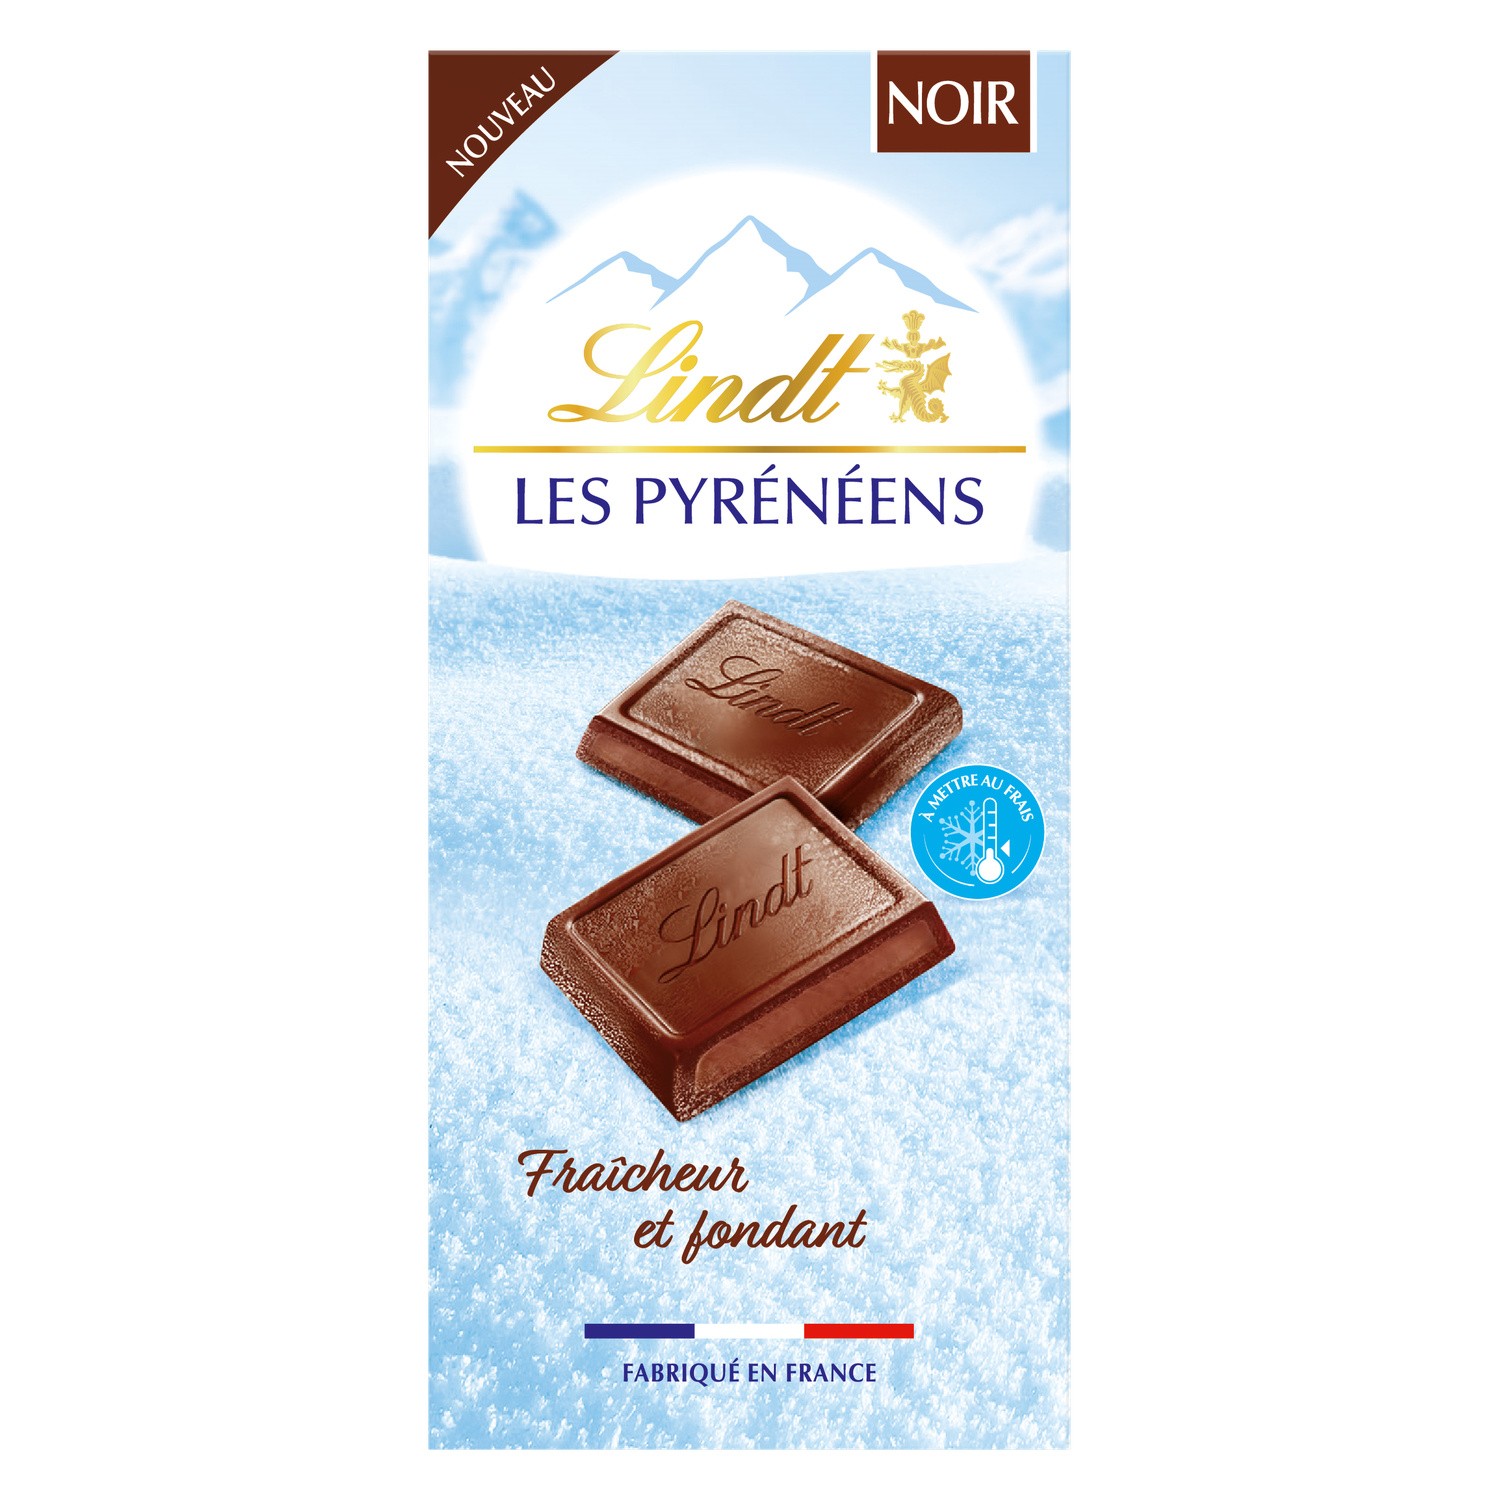 Côte d'Or Chocolat Noir noisettes Bio 150g 